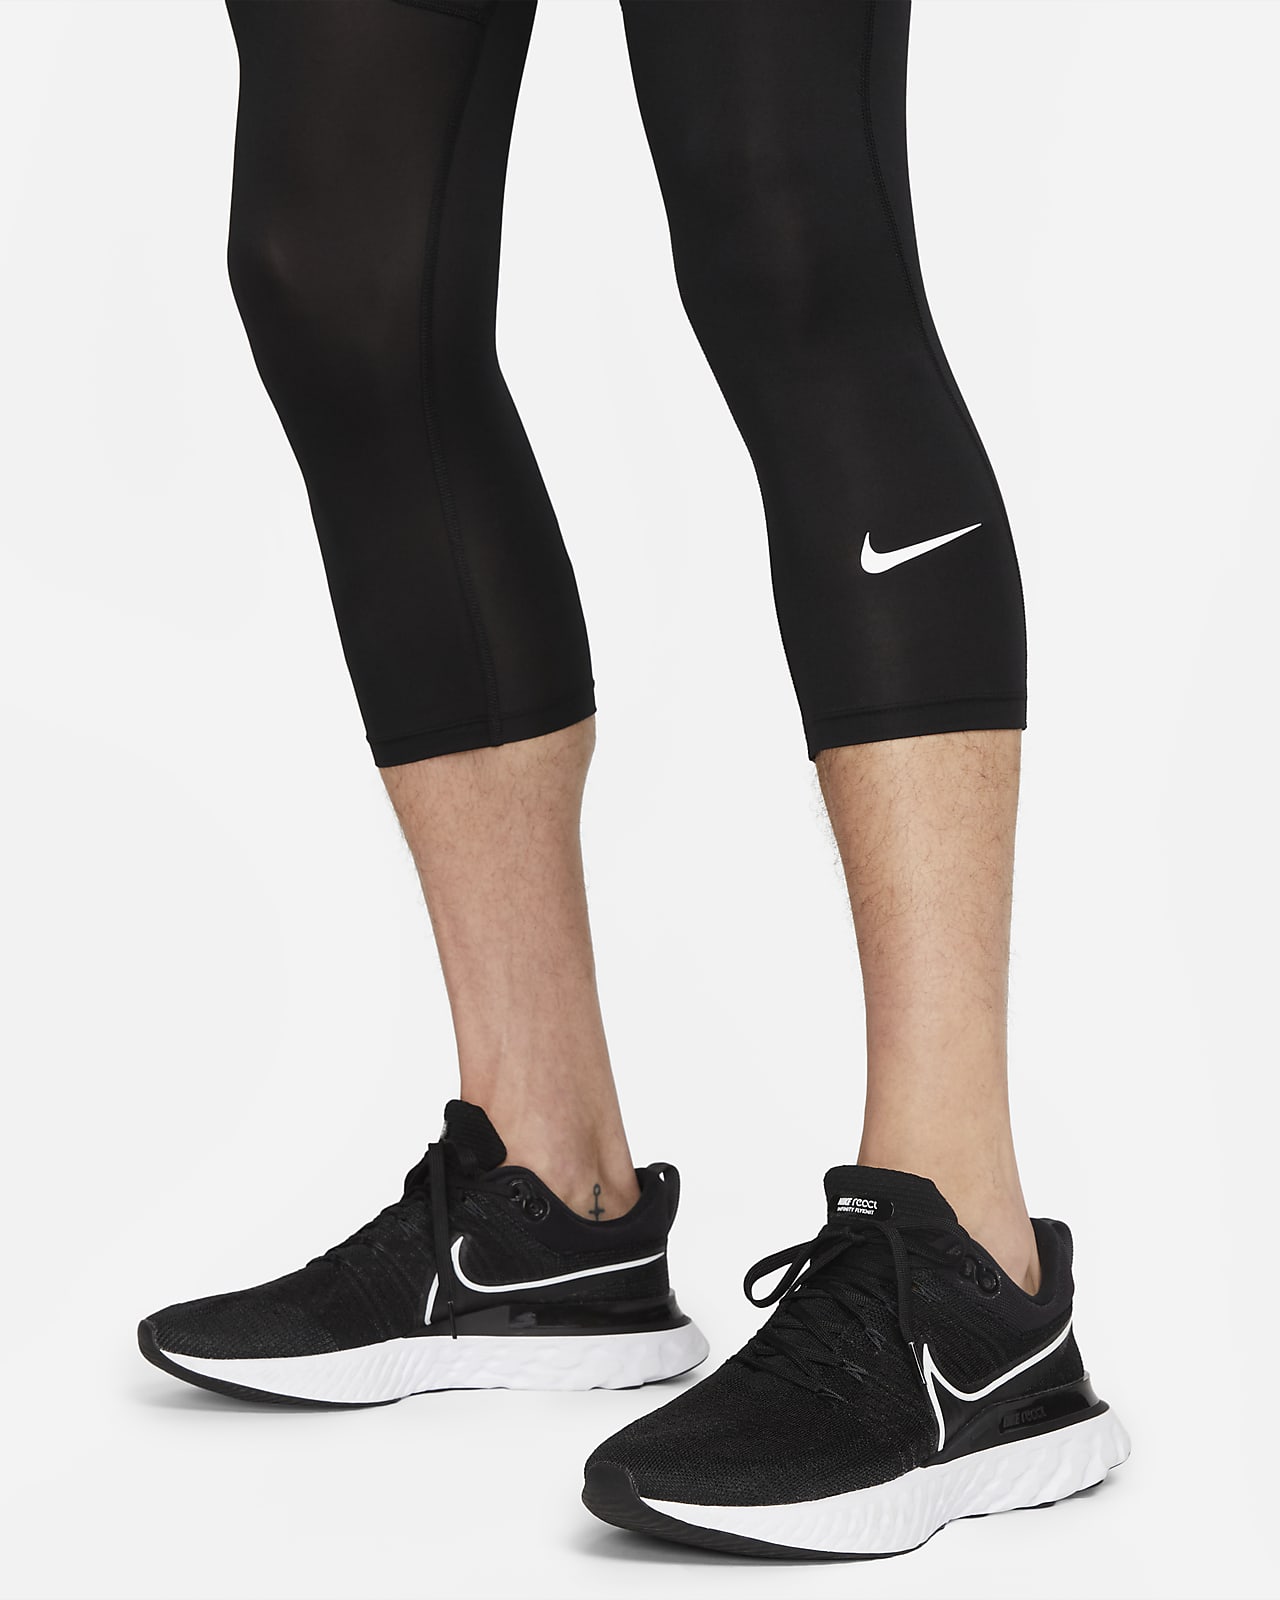 Leggings para Entrenamiento Nike Pro Dri-FIT de Mujer